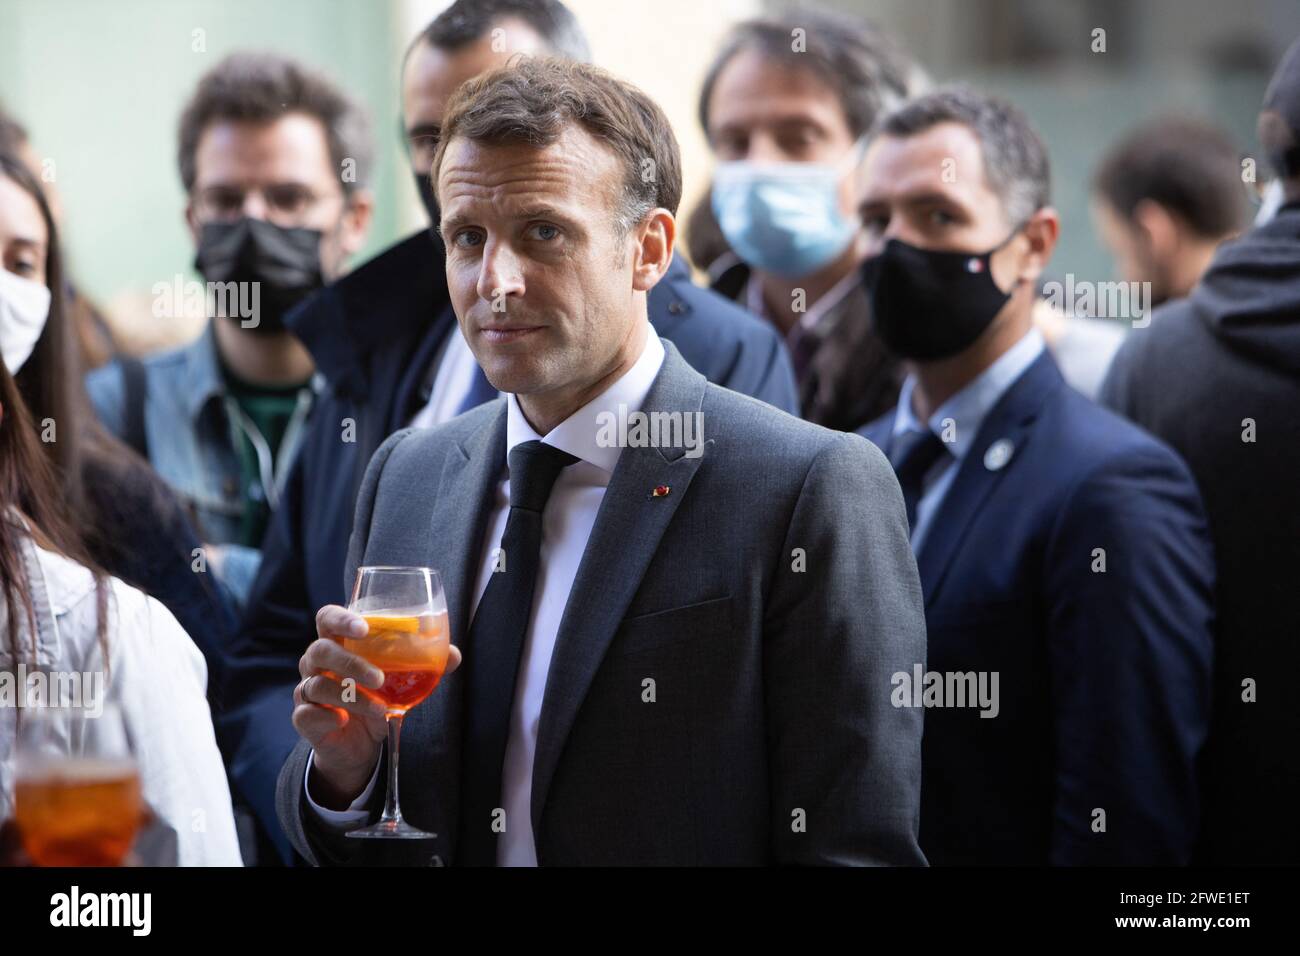 Le président français Emmanuel Macron partage un verre avec les commerçants lors d'une visite pour marquer la réouverture des activités culturelles après des fermetures pour lutter contre la pandémie Covid-19, à Nevers, dans le centre de la France, le 21 mai 2021. Photo de Raphael Lafargue/ABACAPRESS.COM Banque D'Images